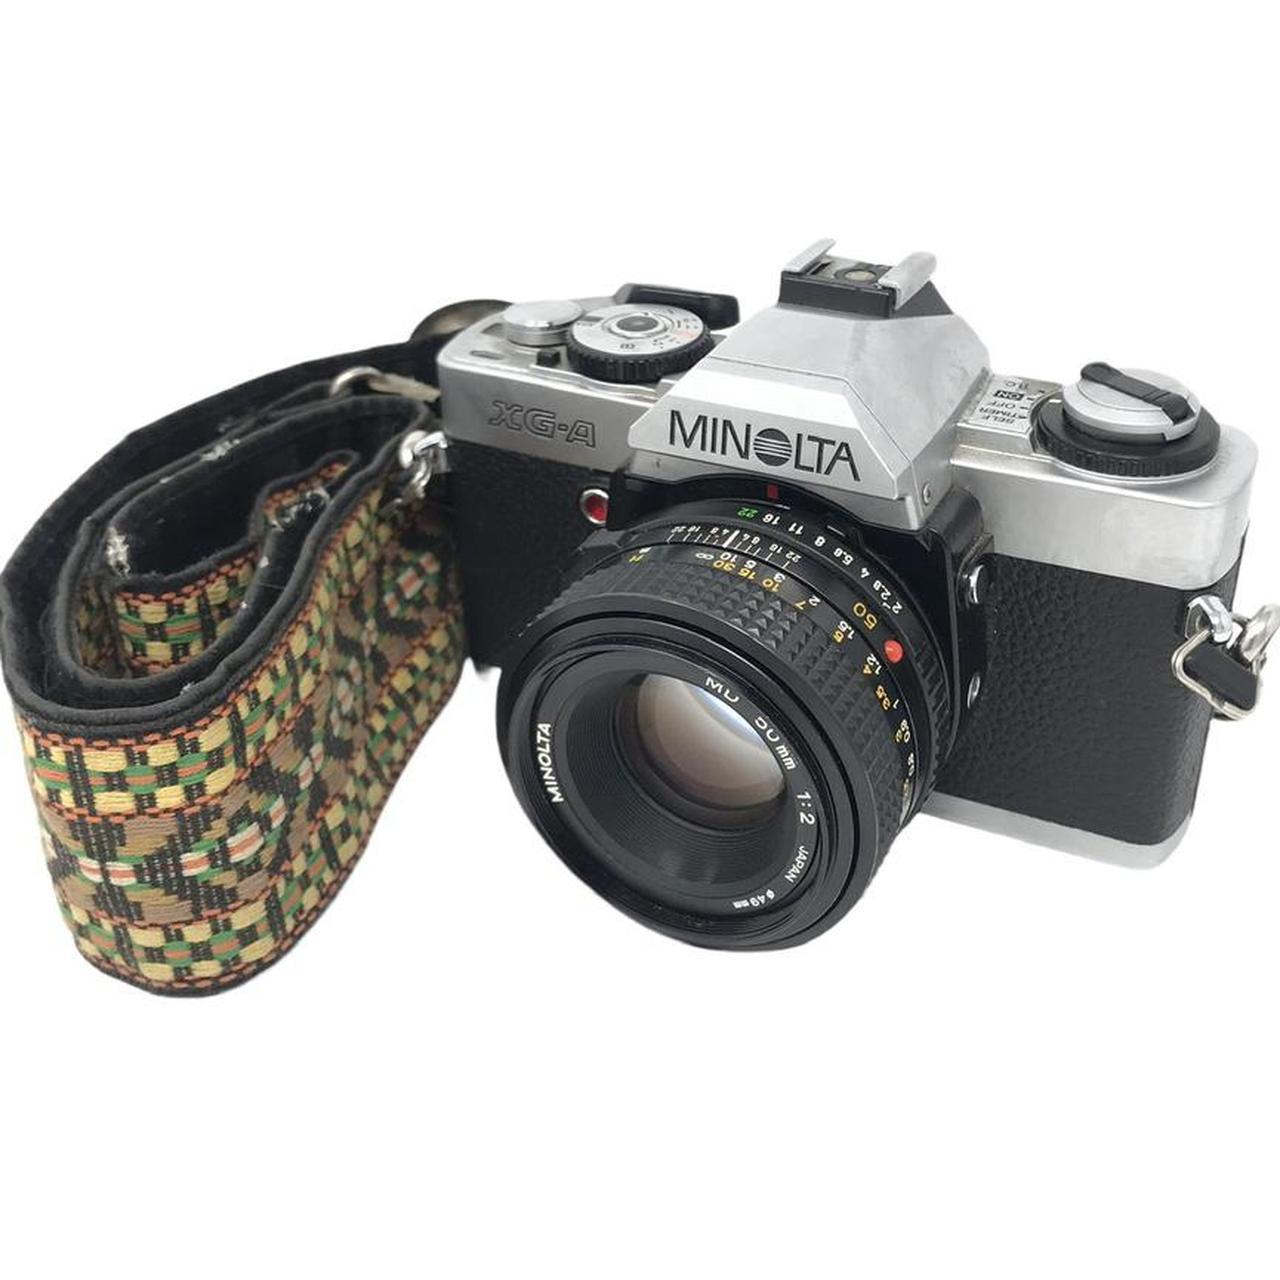 Product Image 1 - Minolta XG-A 35mm Film Camera

Comes